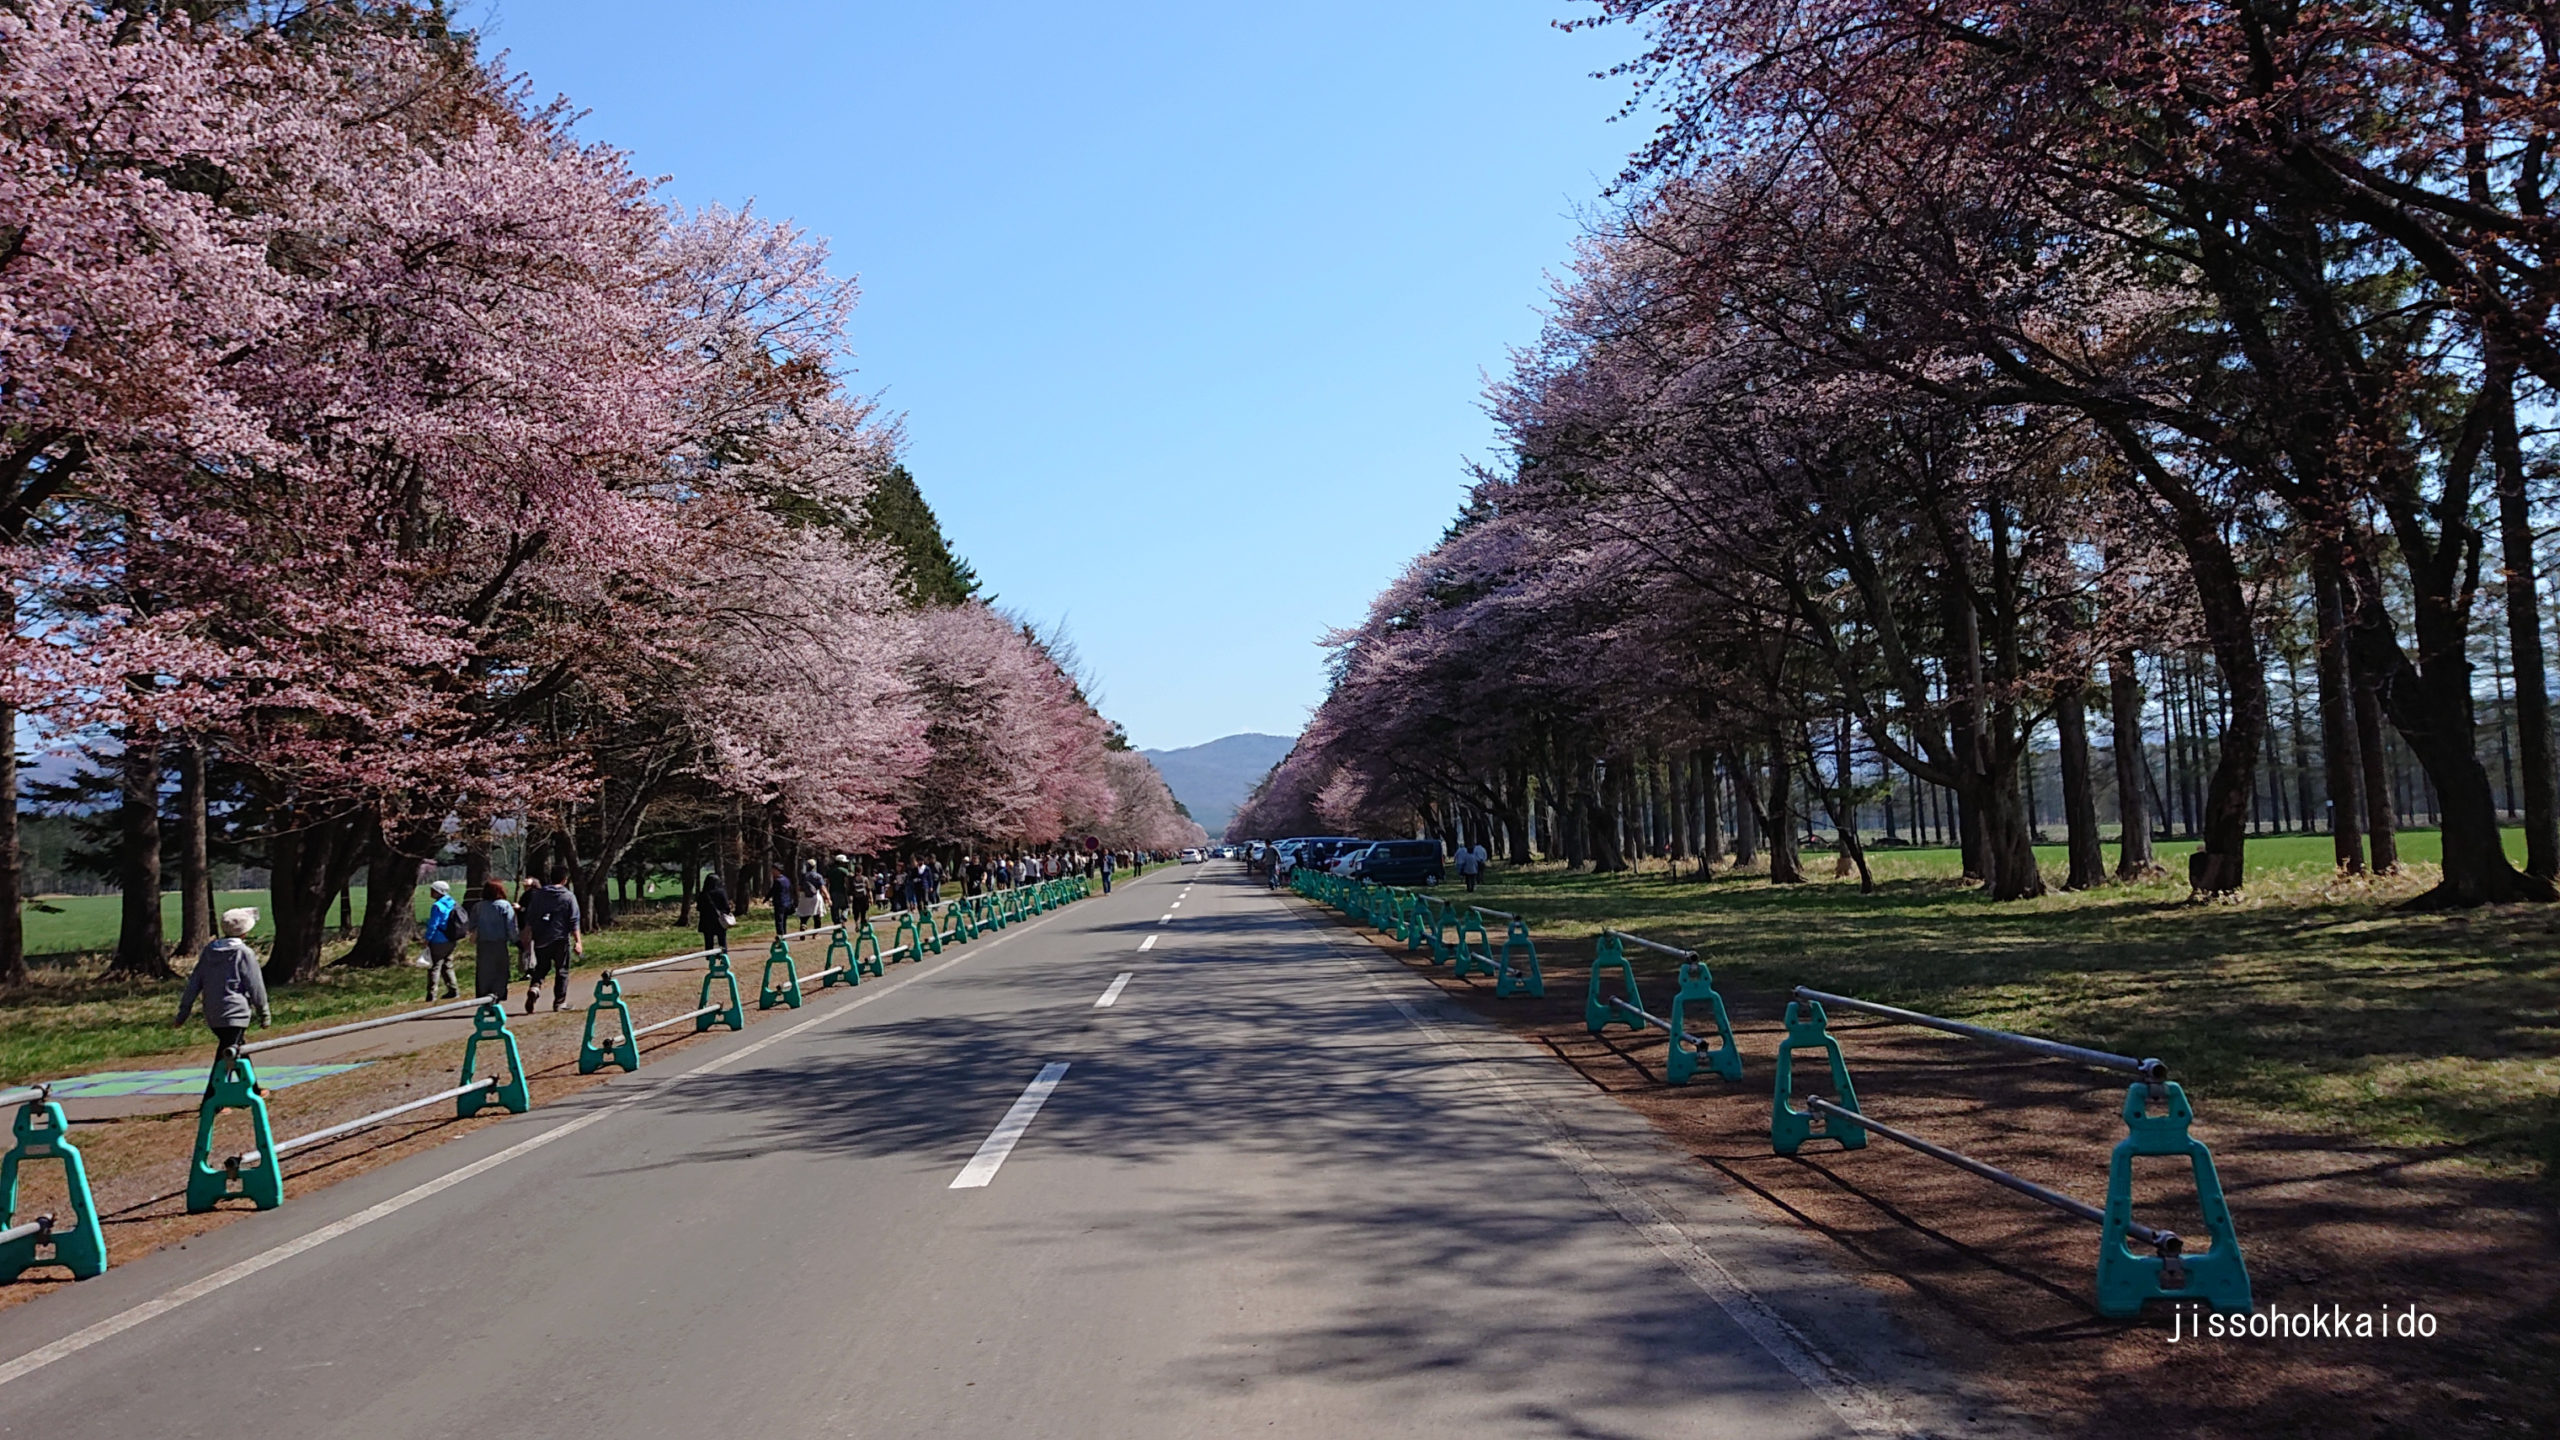 二十間道路桜並木 21年のさくらまつりは4月30日から5月5日 日高地方 観光地紹介 実走北海道2nd